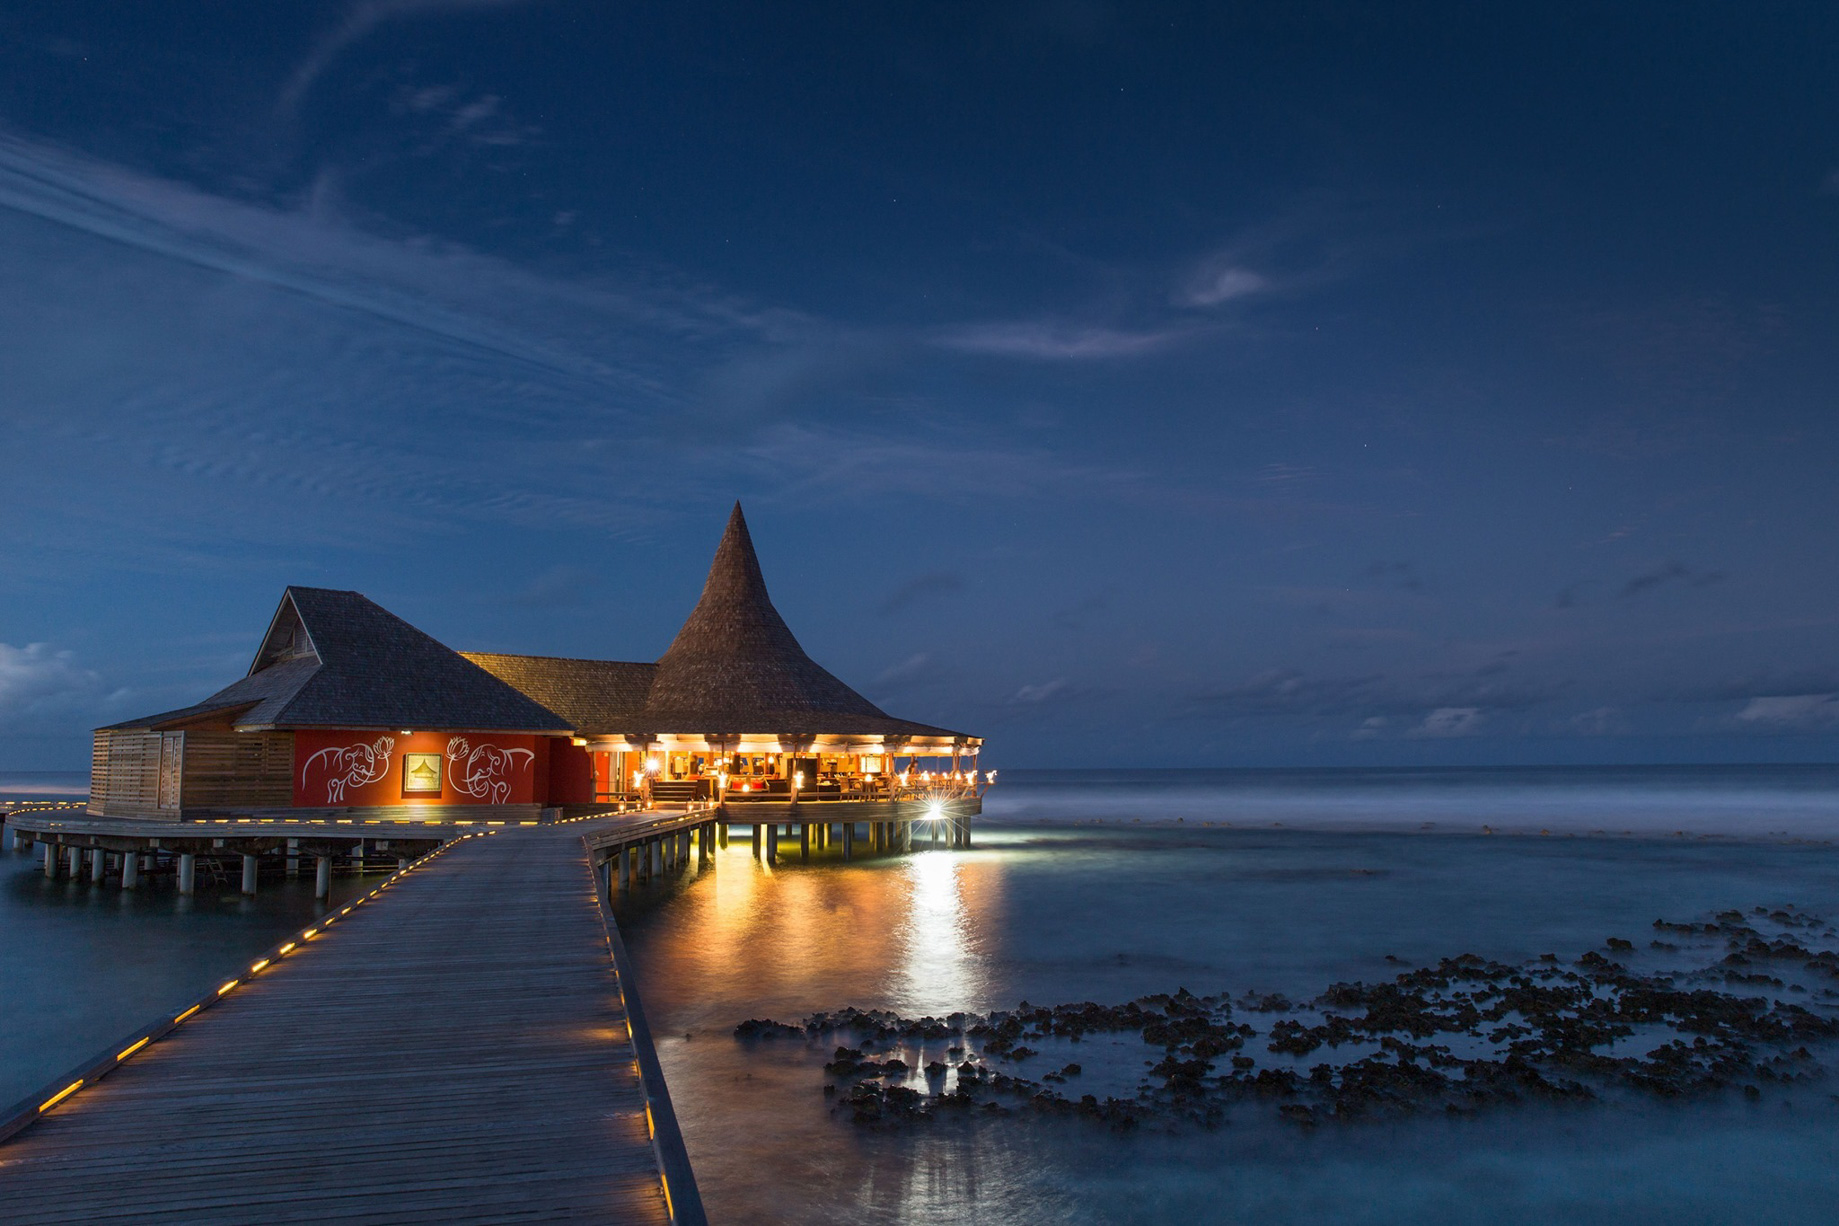 Anantara Veli Maldives Resort – South Male Atoll, Maldives – Baan Huraa Restaurant Night View